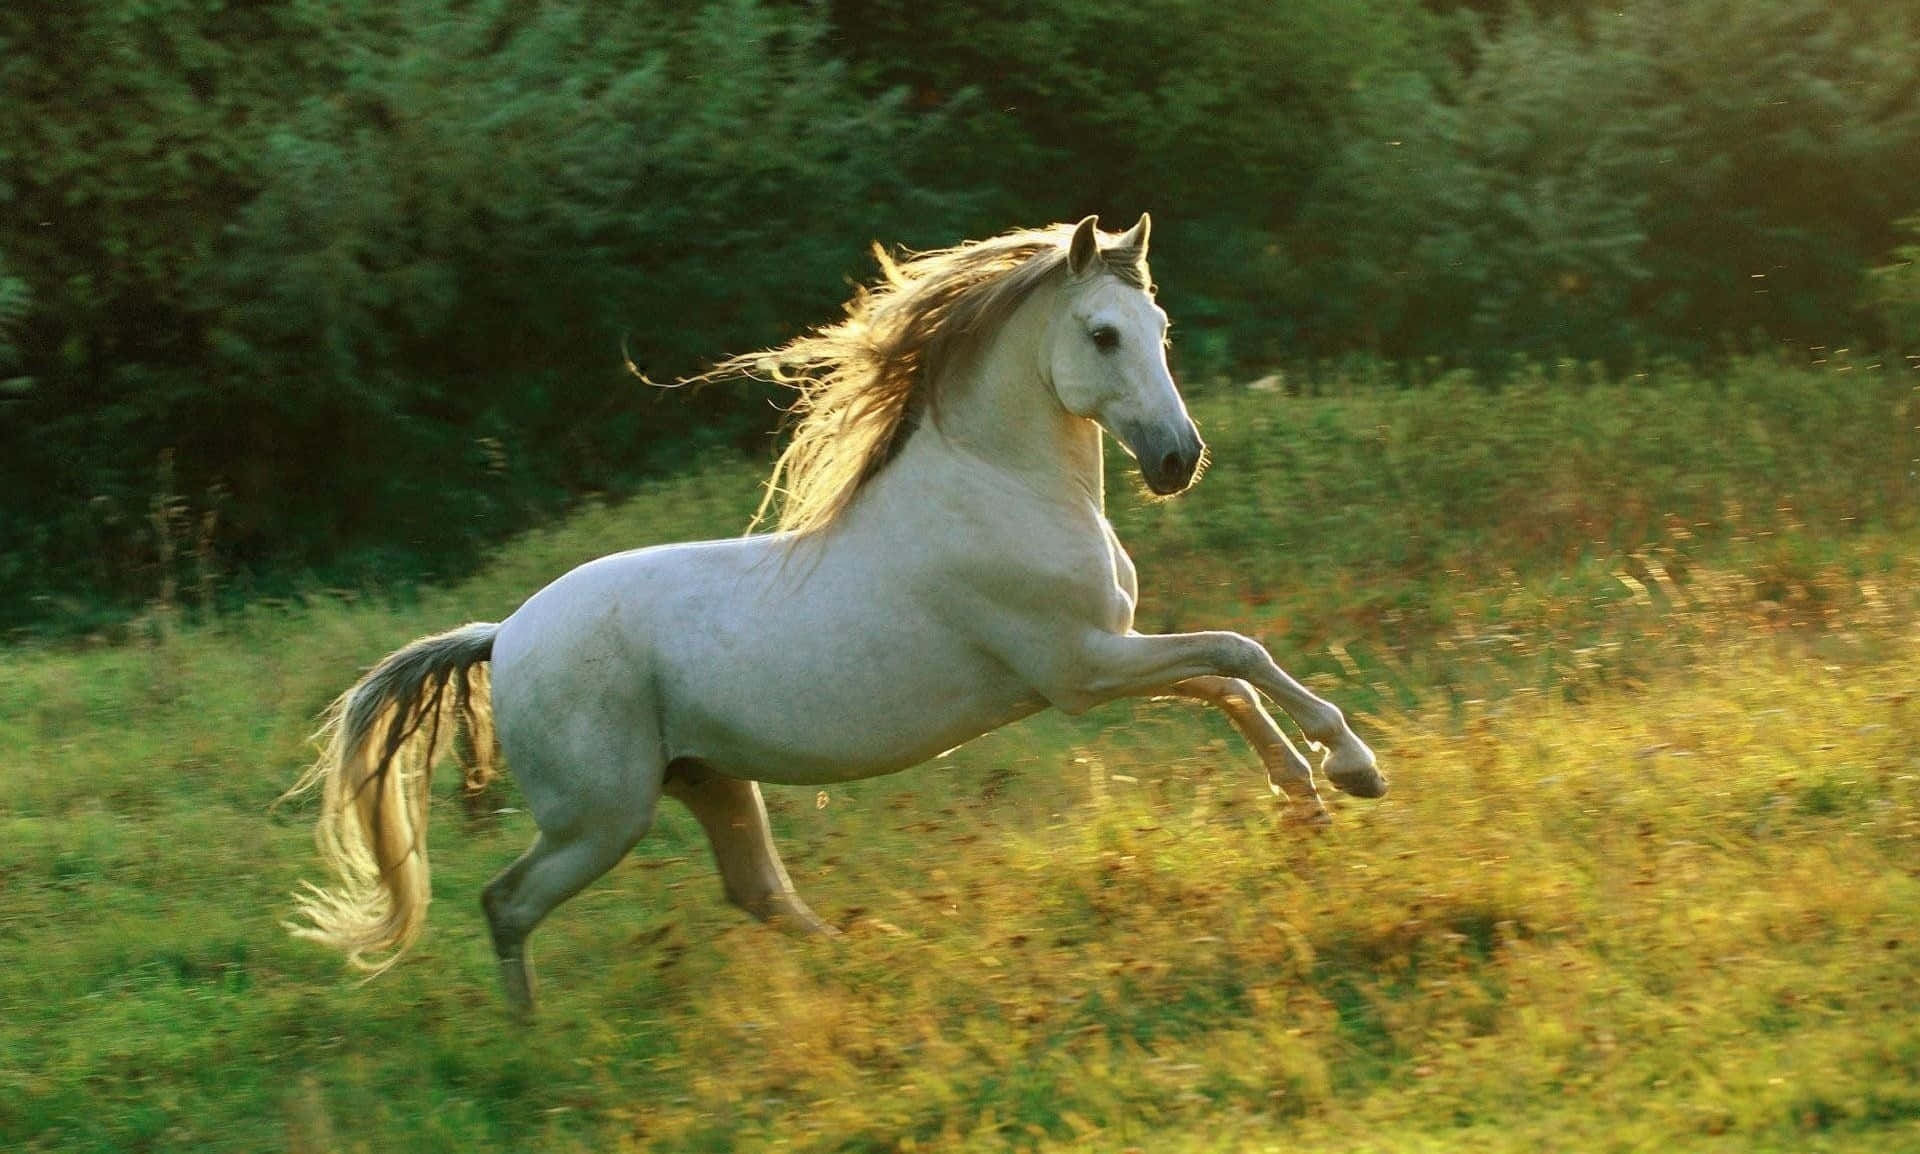 "Gorgeous White Horse"